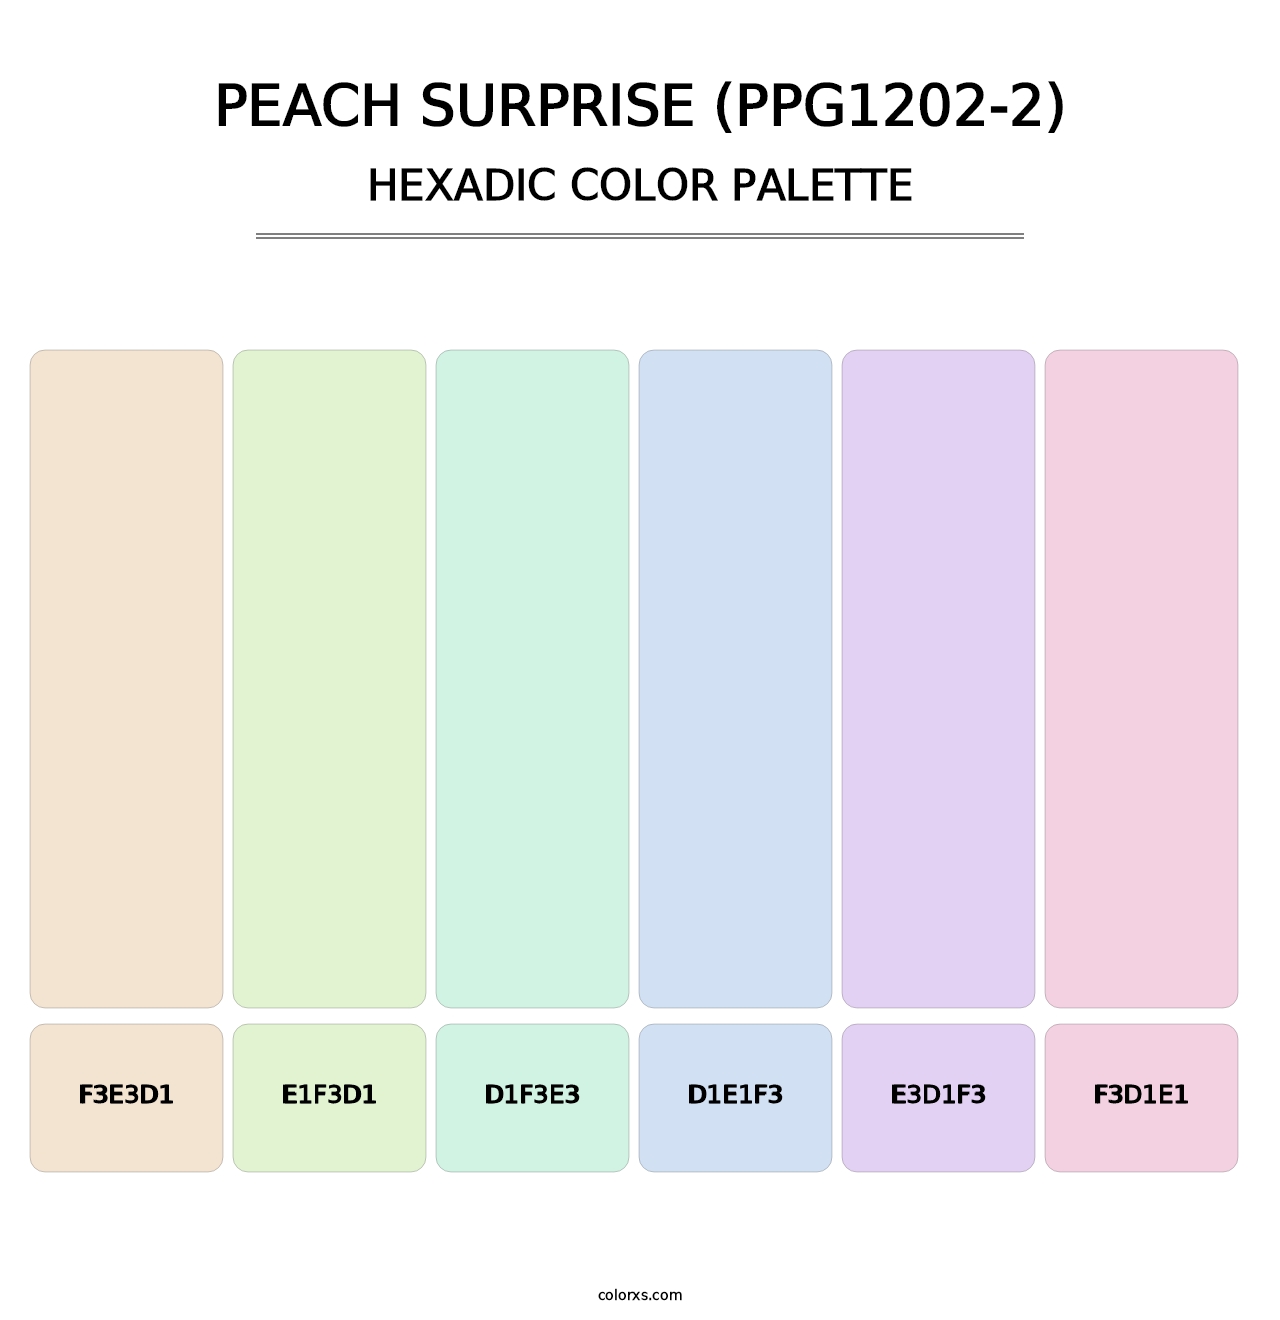 Peach Surprise (PPG1202-2) - Hexadic Color Palette